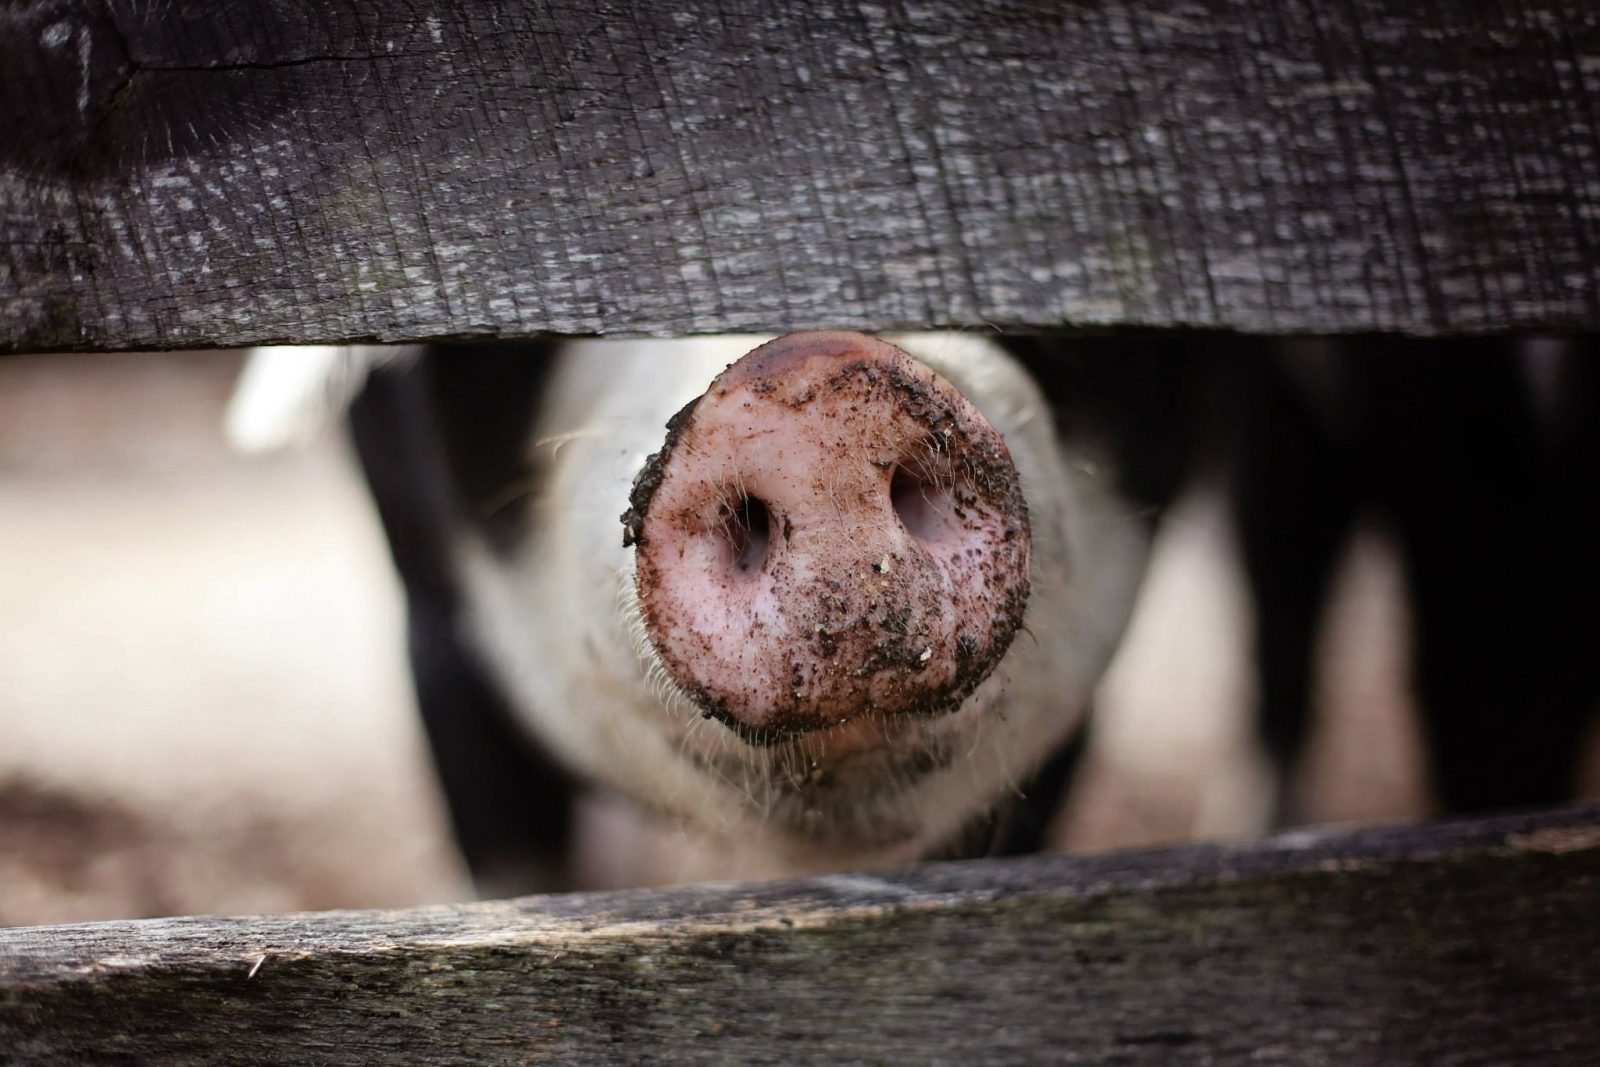 Pig snout in between fencing